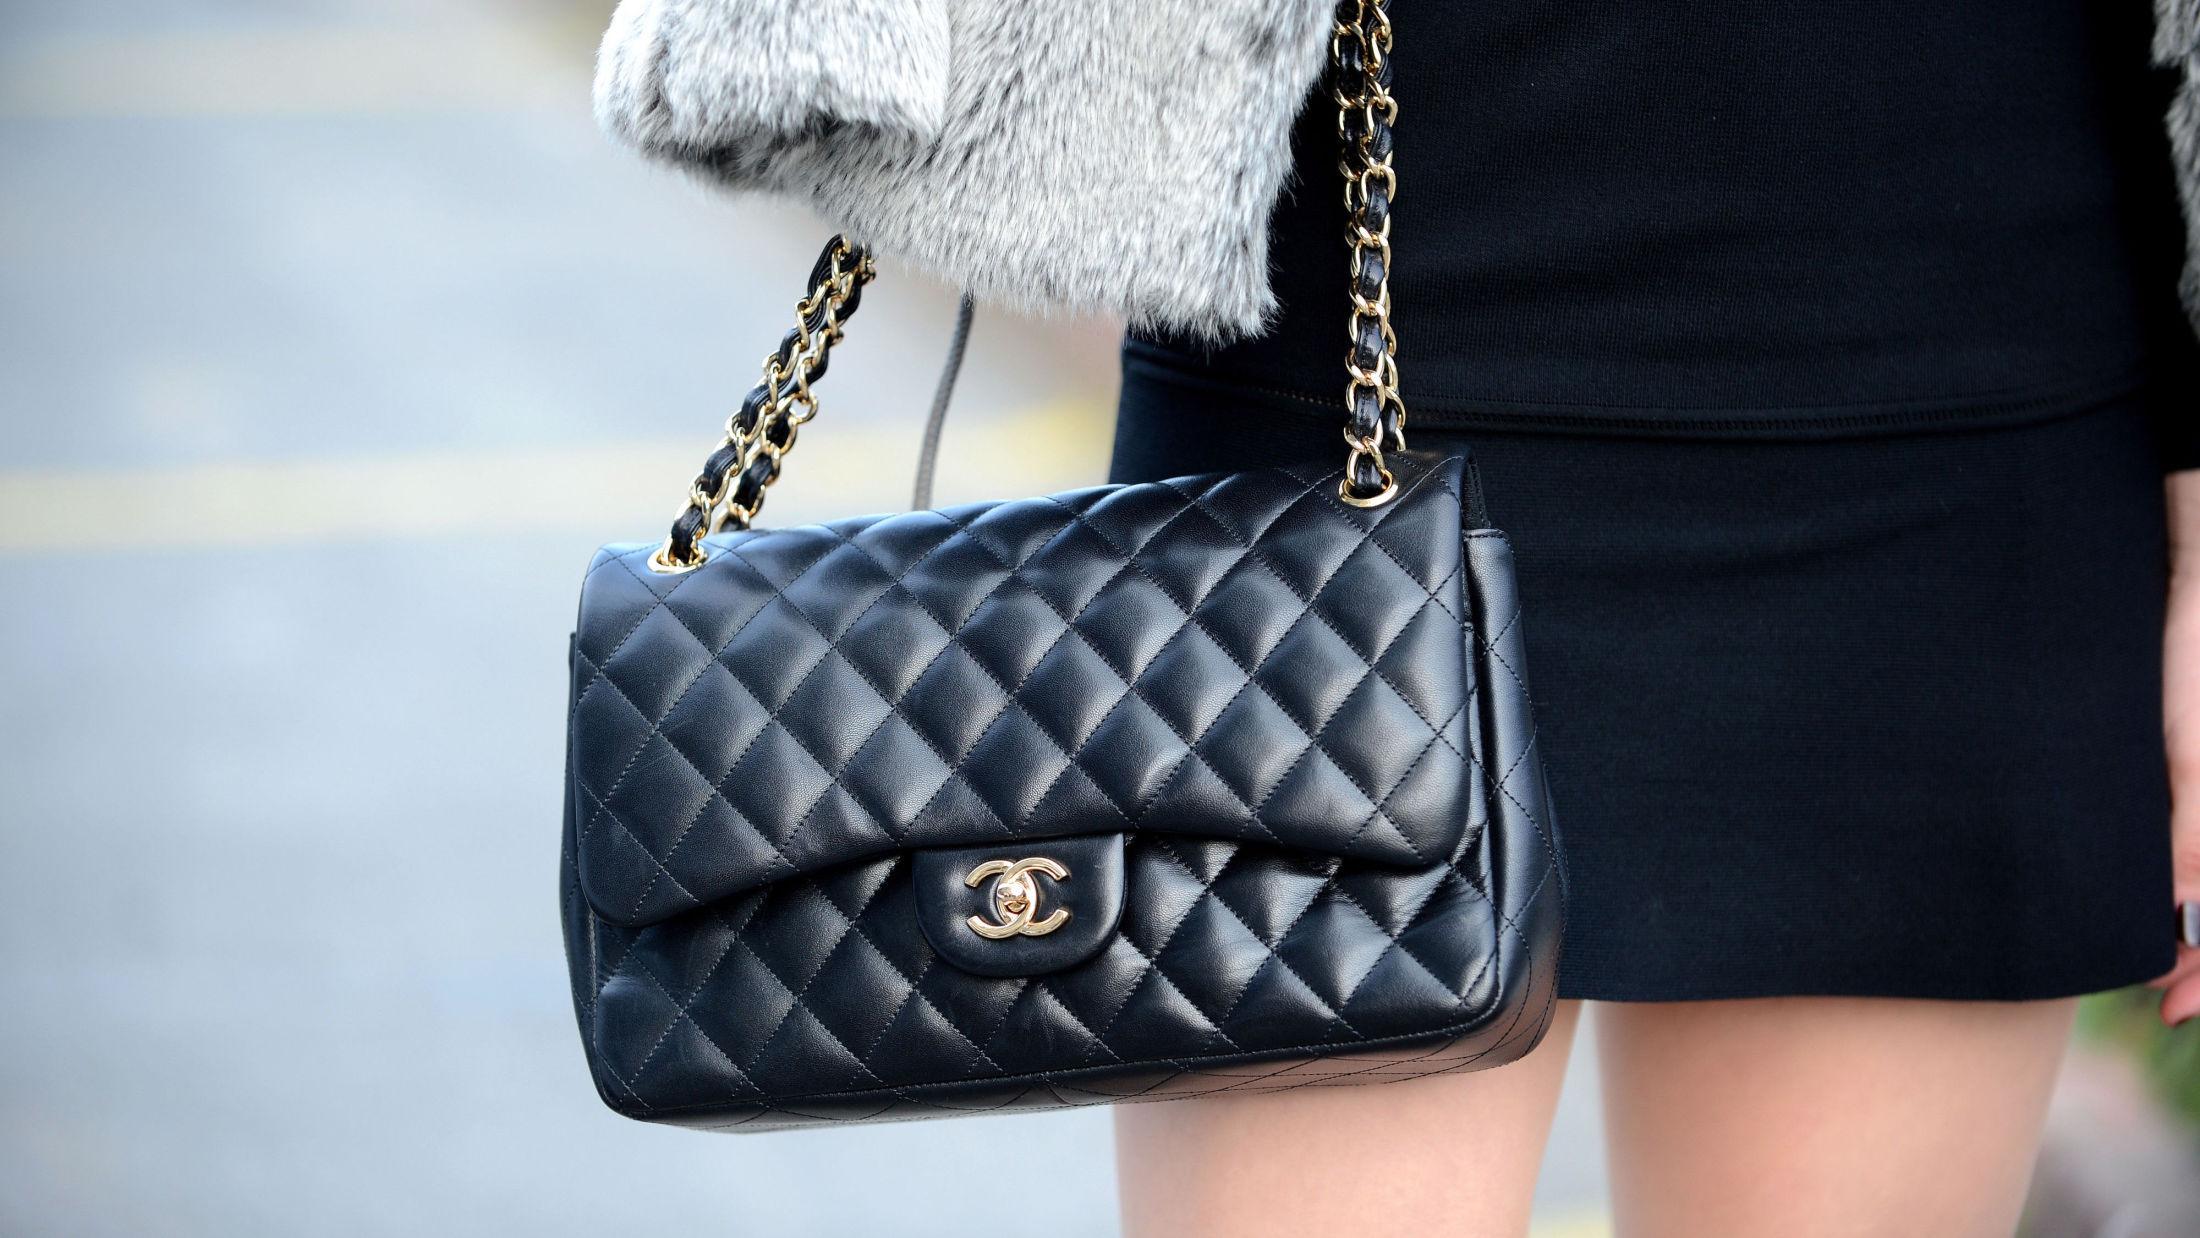 KLASSIKER: Den ikoniske 2.55 vesken fra Chanel i svart. Foto: Getty Images